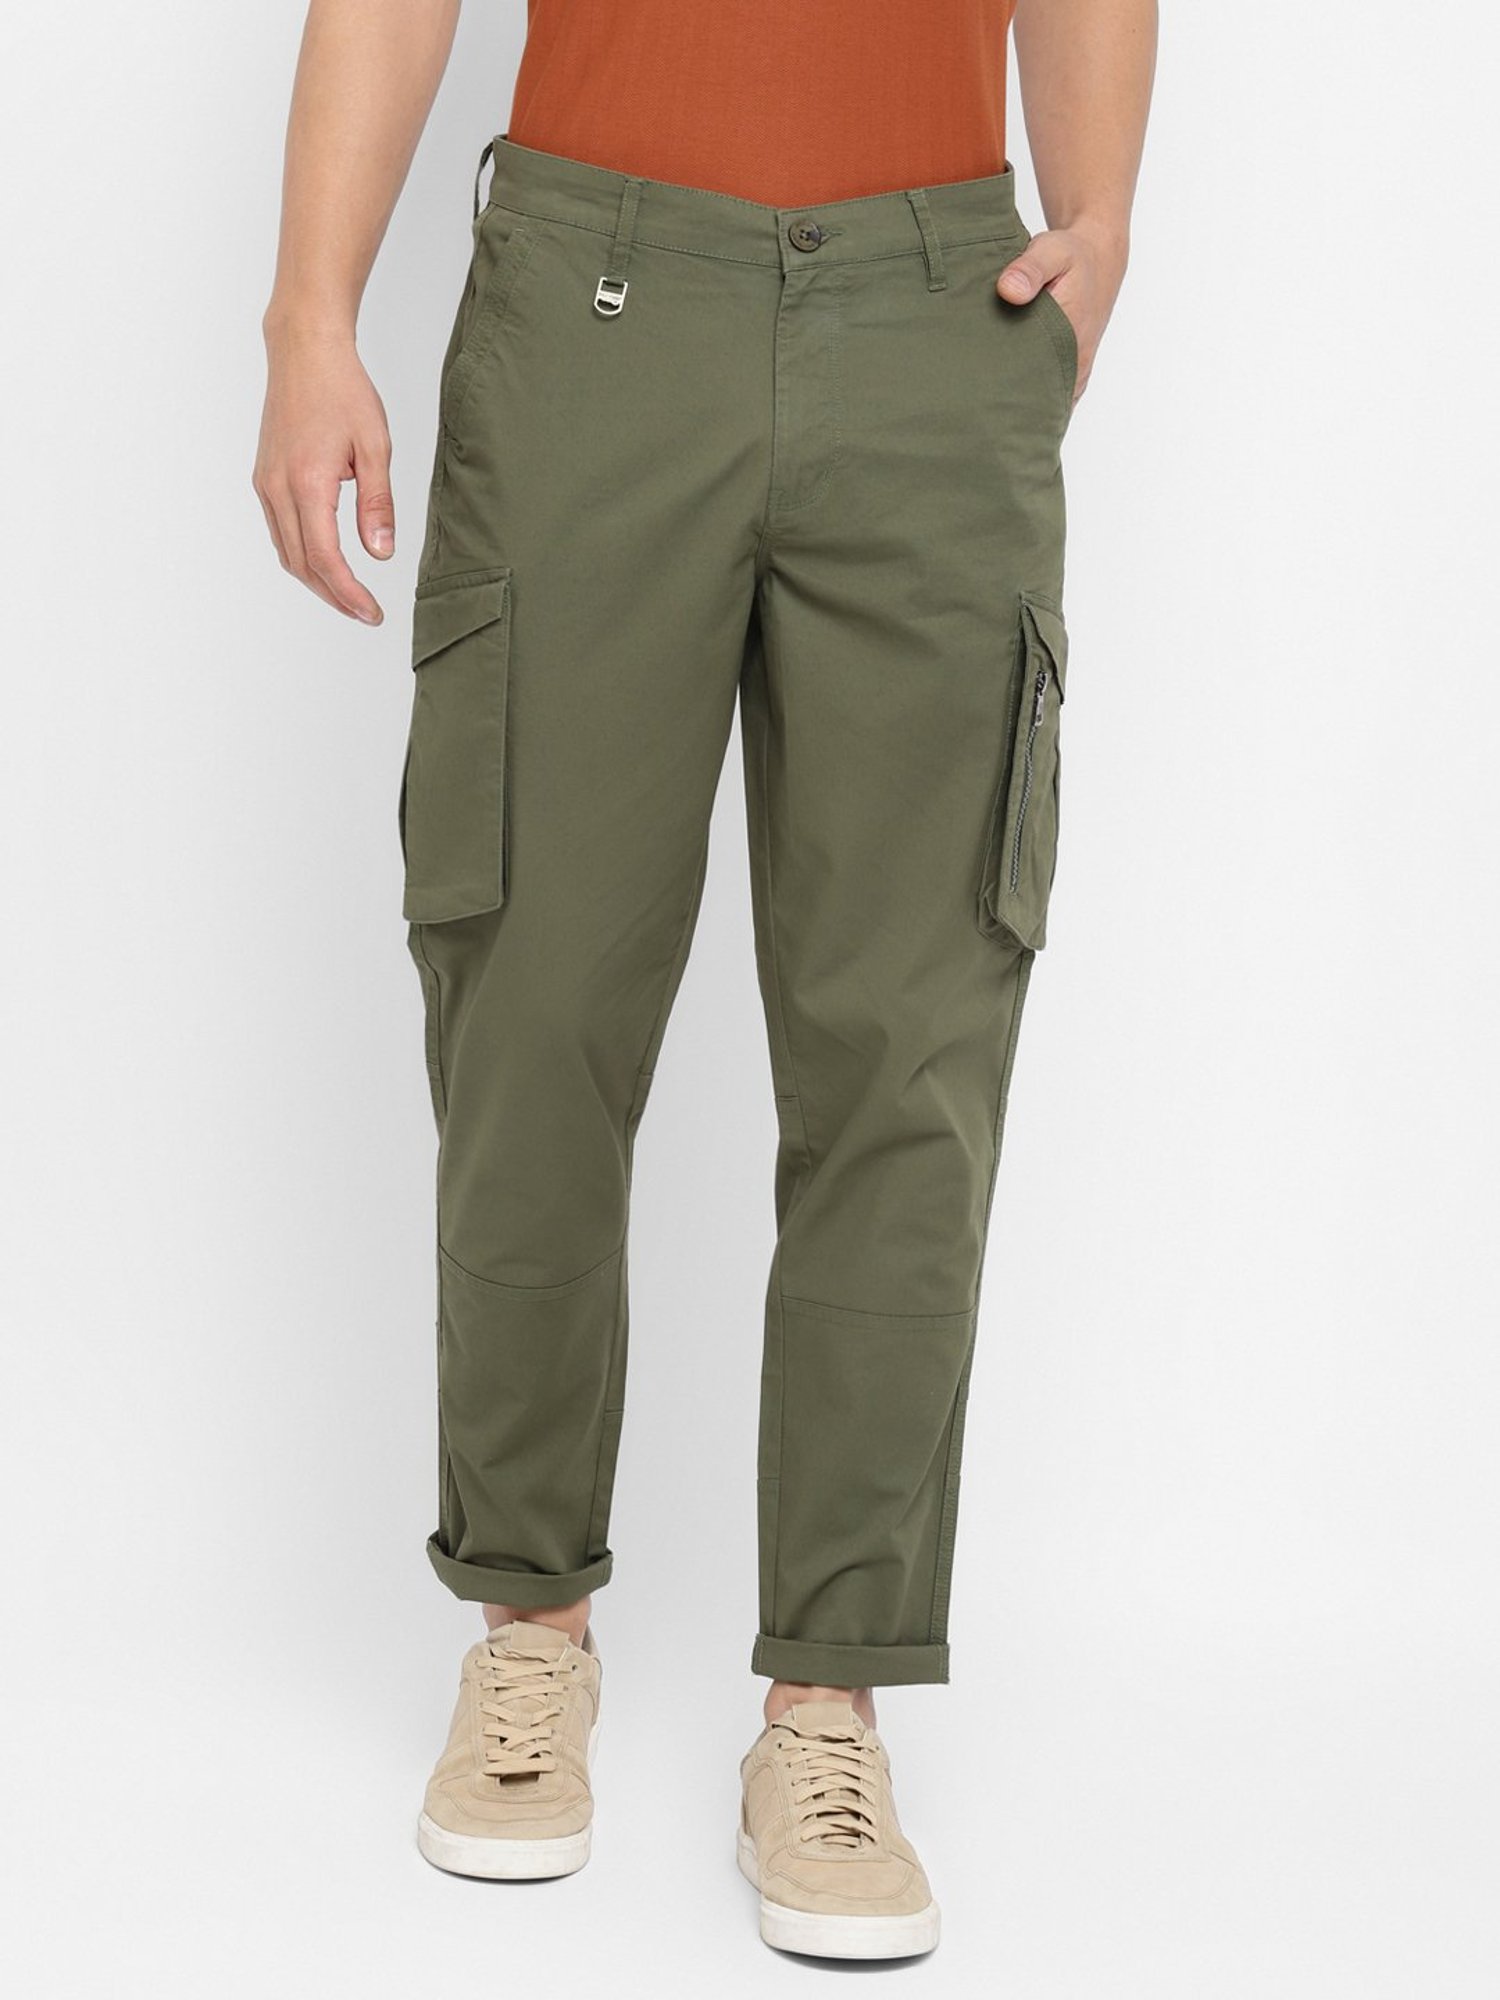 Buy Light Brown Trousers  Pants for Men by ECKO UNLTD Online  Ajiocom